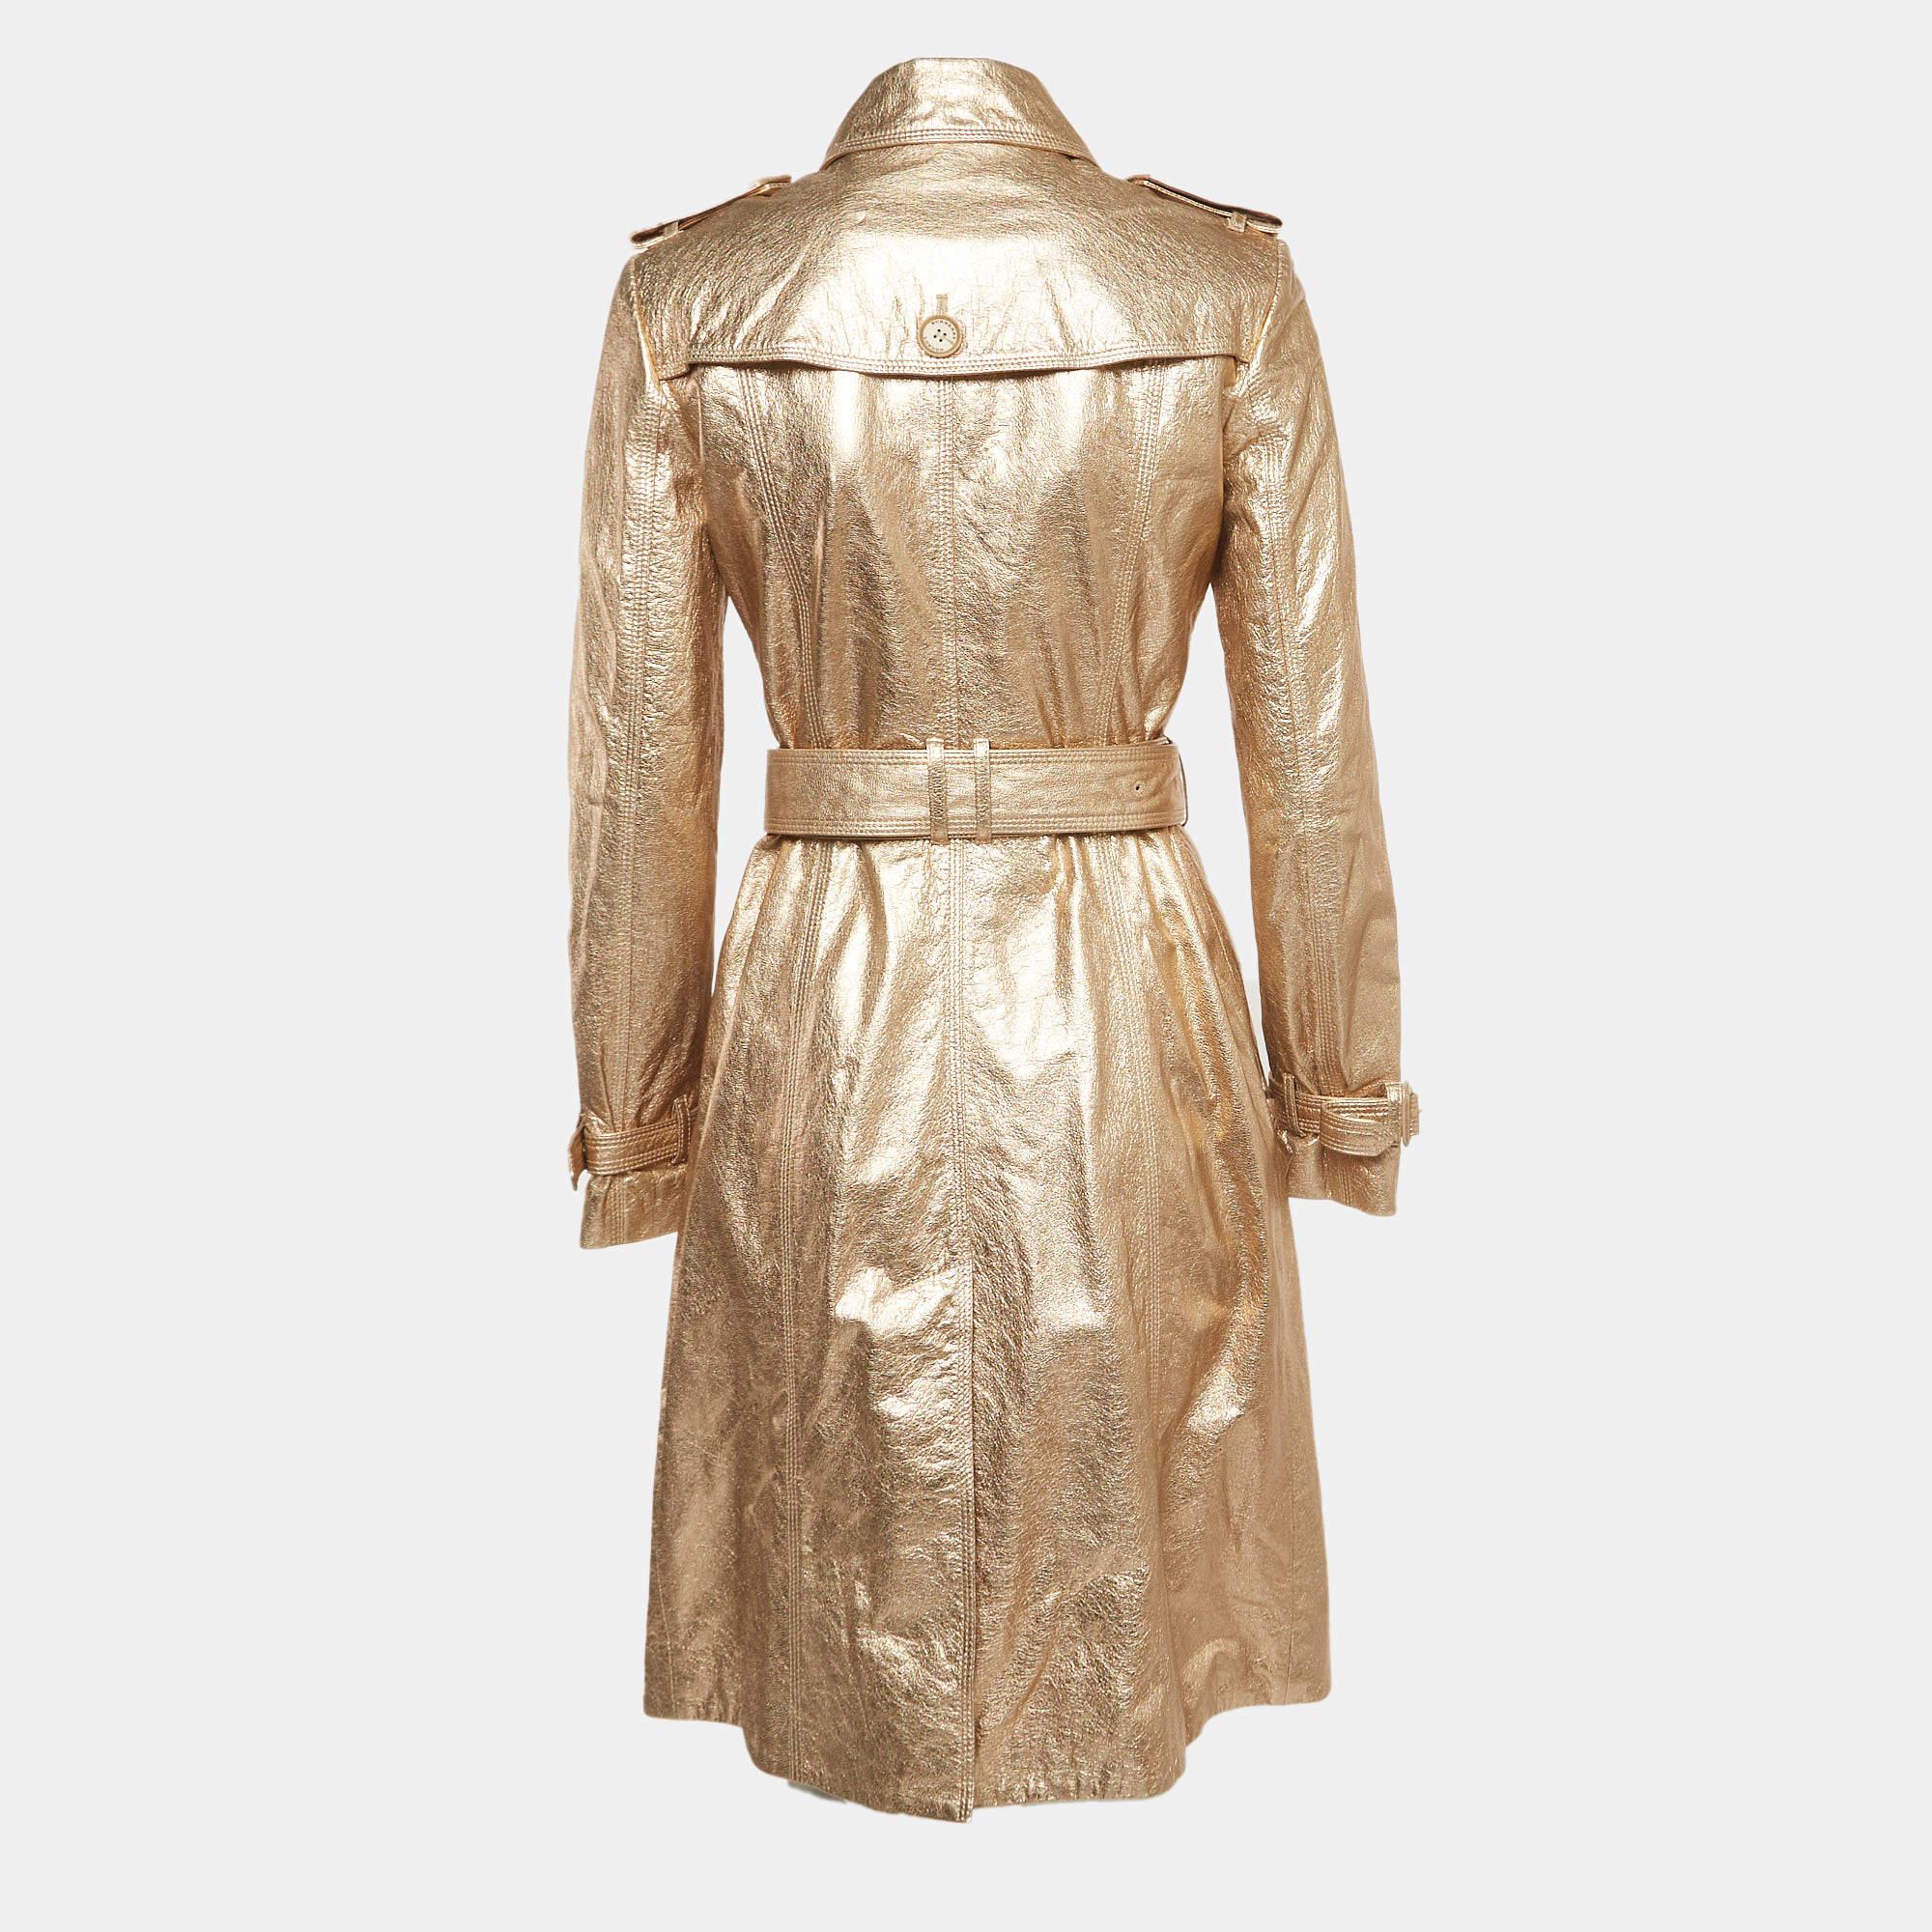 Der Mantel von Burberry ist ein luxuriöses und stilvolles Kleidungsstück. Sie ist aus hochwertigem goldfarbenem Leder gefertigt und verfügt über einen Zweireiher für einen klassischen Look. Der Mantel strahlt mit seiner maßgeschneiderten Passform,